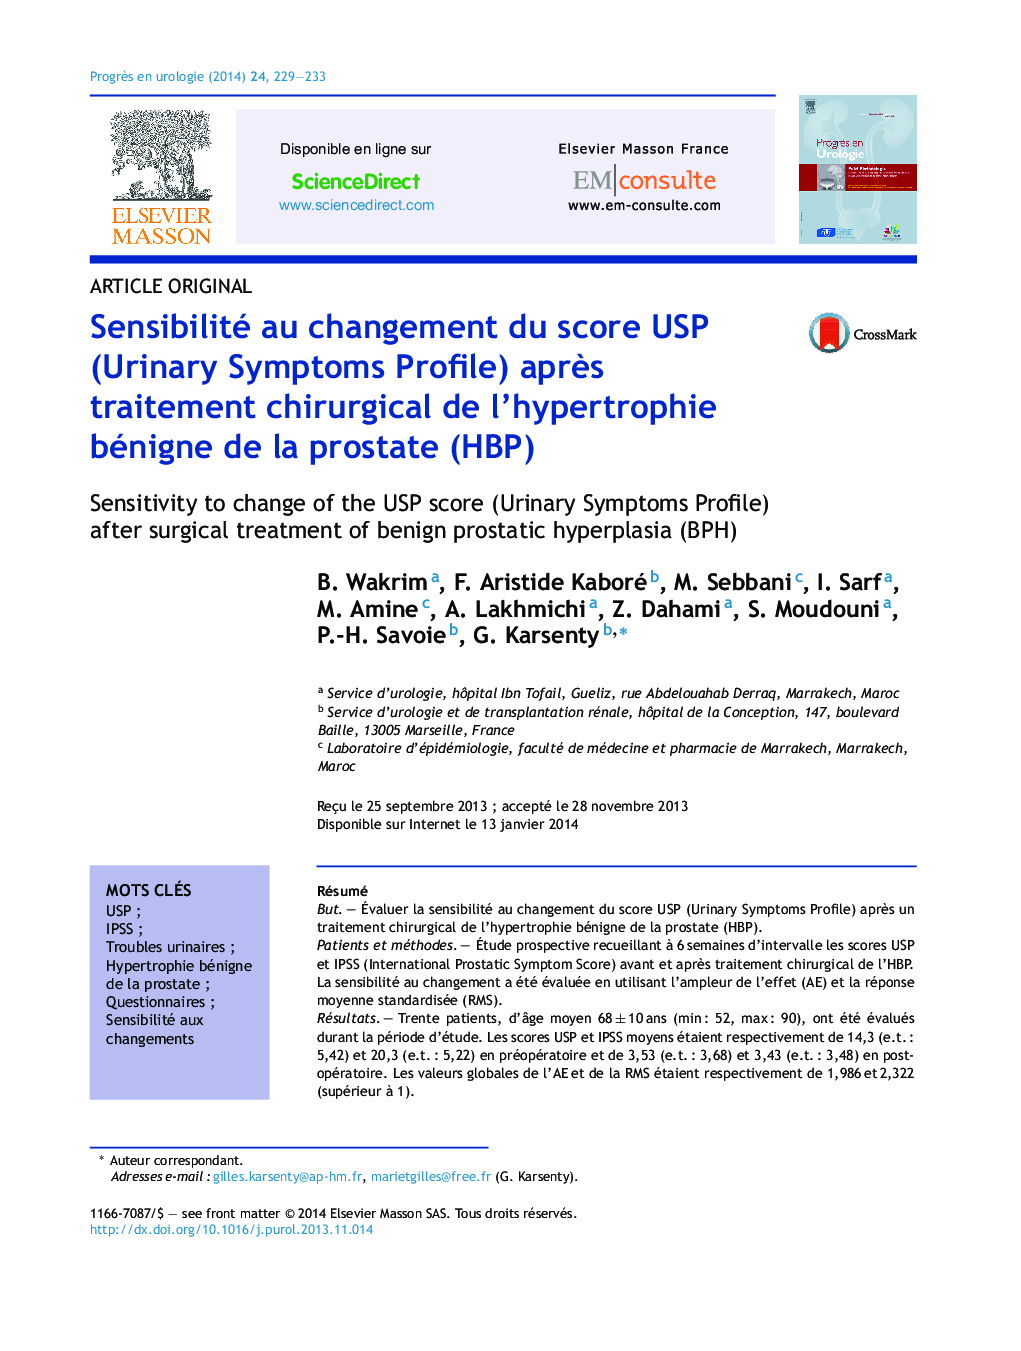 Sensibilité au changement du score USP (Urinary Symptoms Profile) aprÃ¨s traitement chirurgical de l'hypertrophie bénigne de la prostate (HBP)